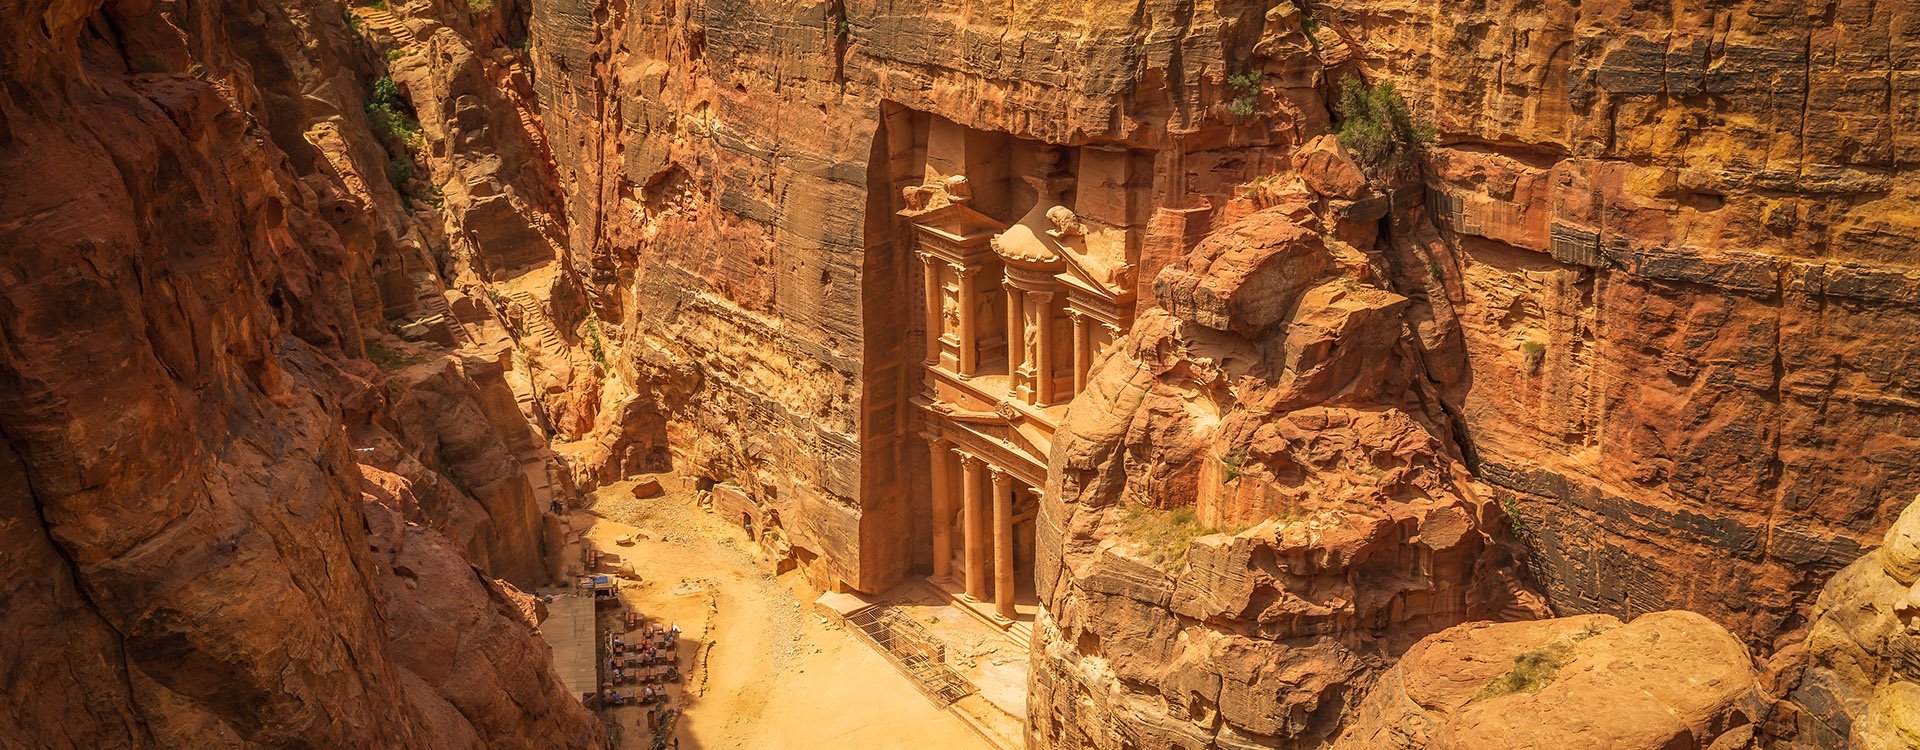 Ancient City of Petra: El-Khazneh (Aerial View)